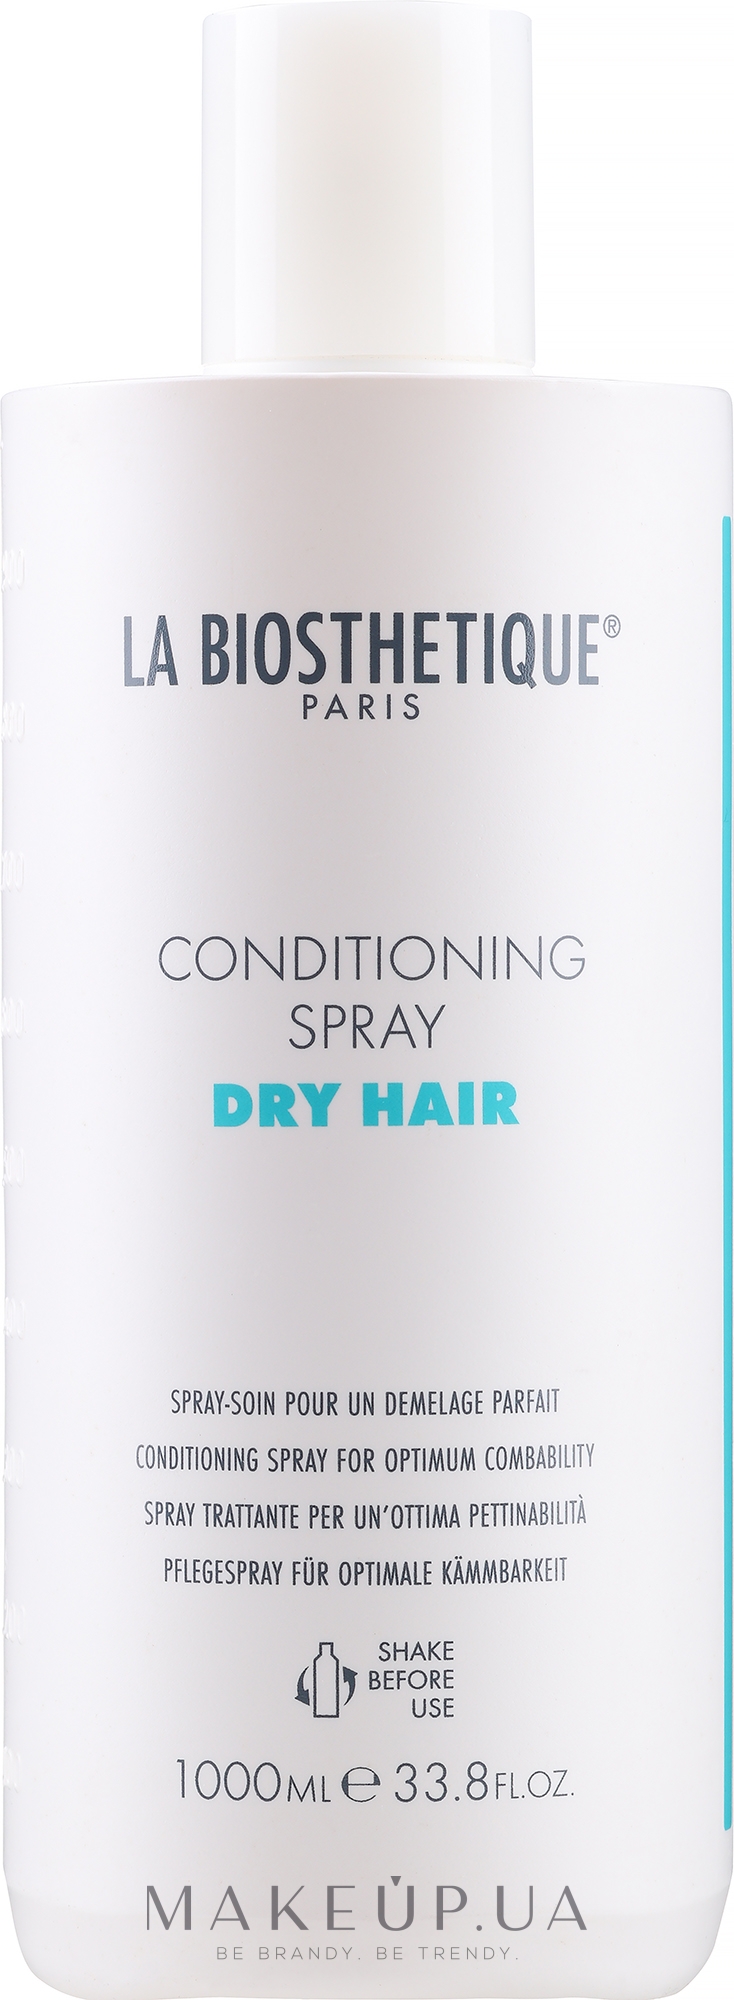 Спрей-кондиционер для сухих и поврежденных волос - La Biosthetique Conditioning Spray Dry Hair — фото 1000ml